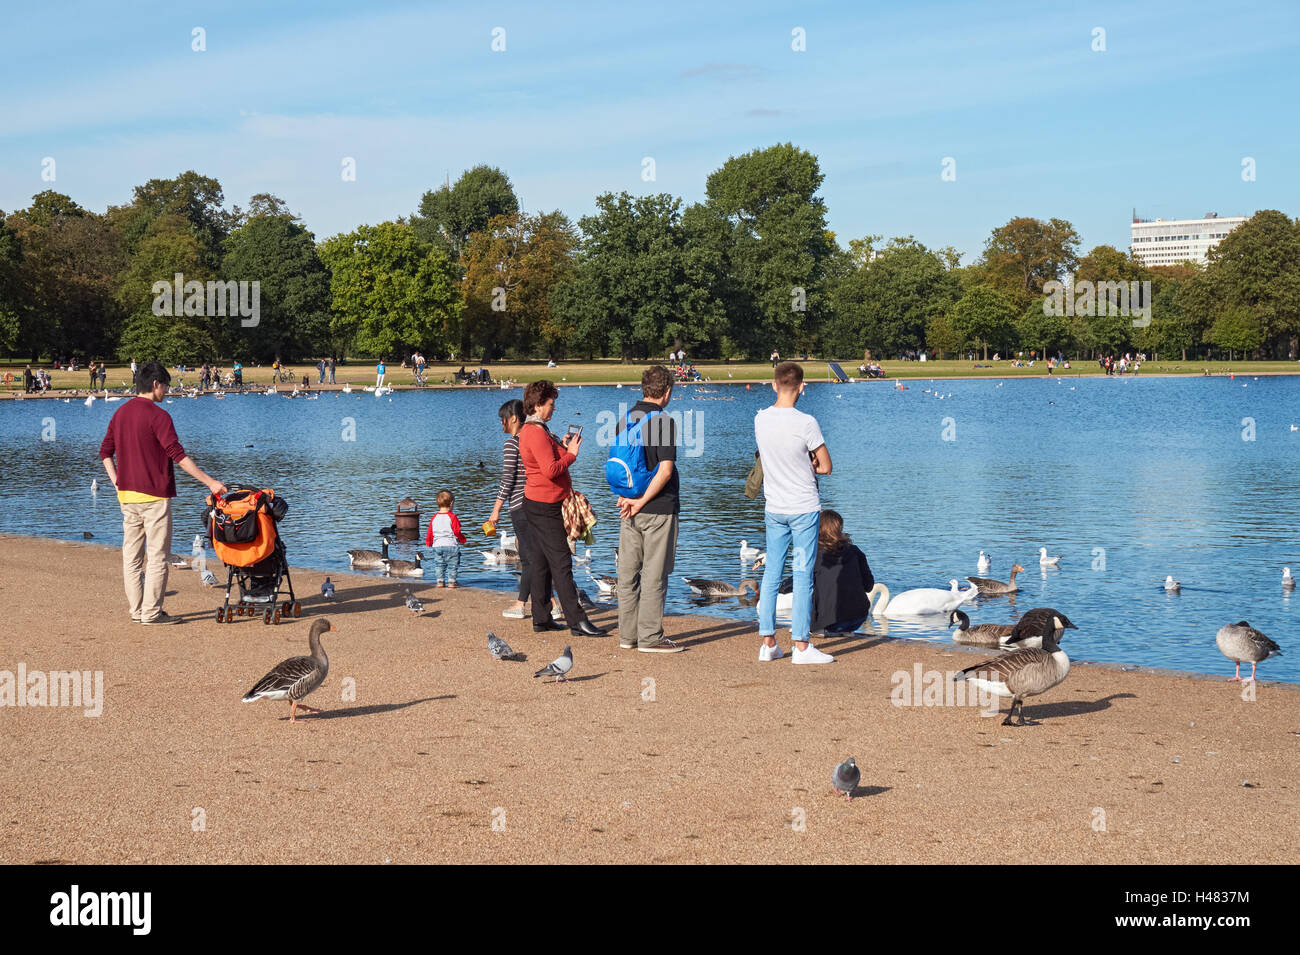 People enjoying warm September weather in Kensington Gardens, London